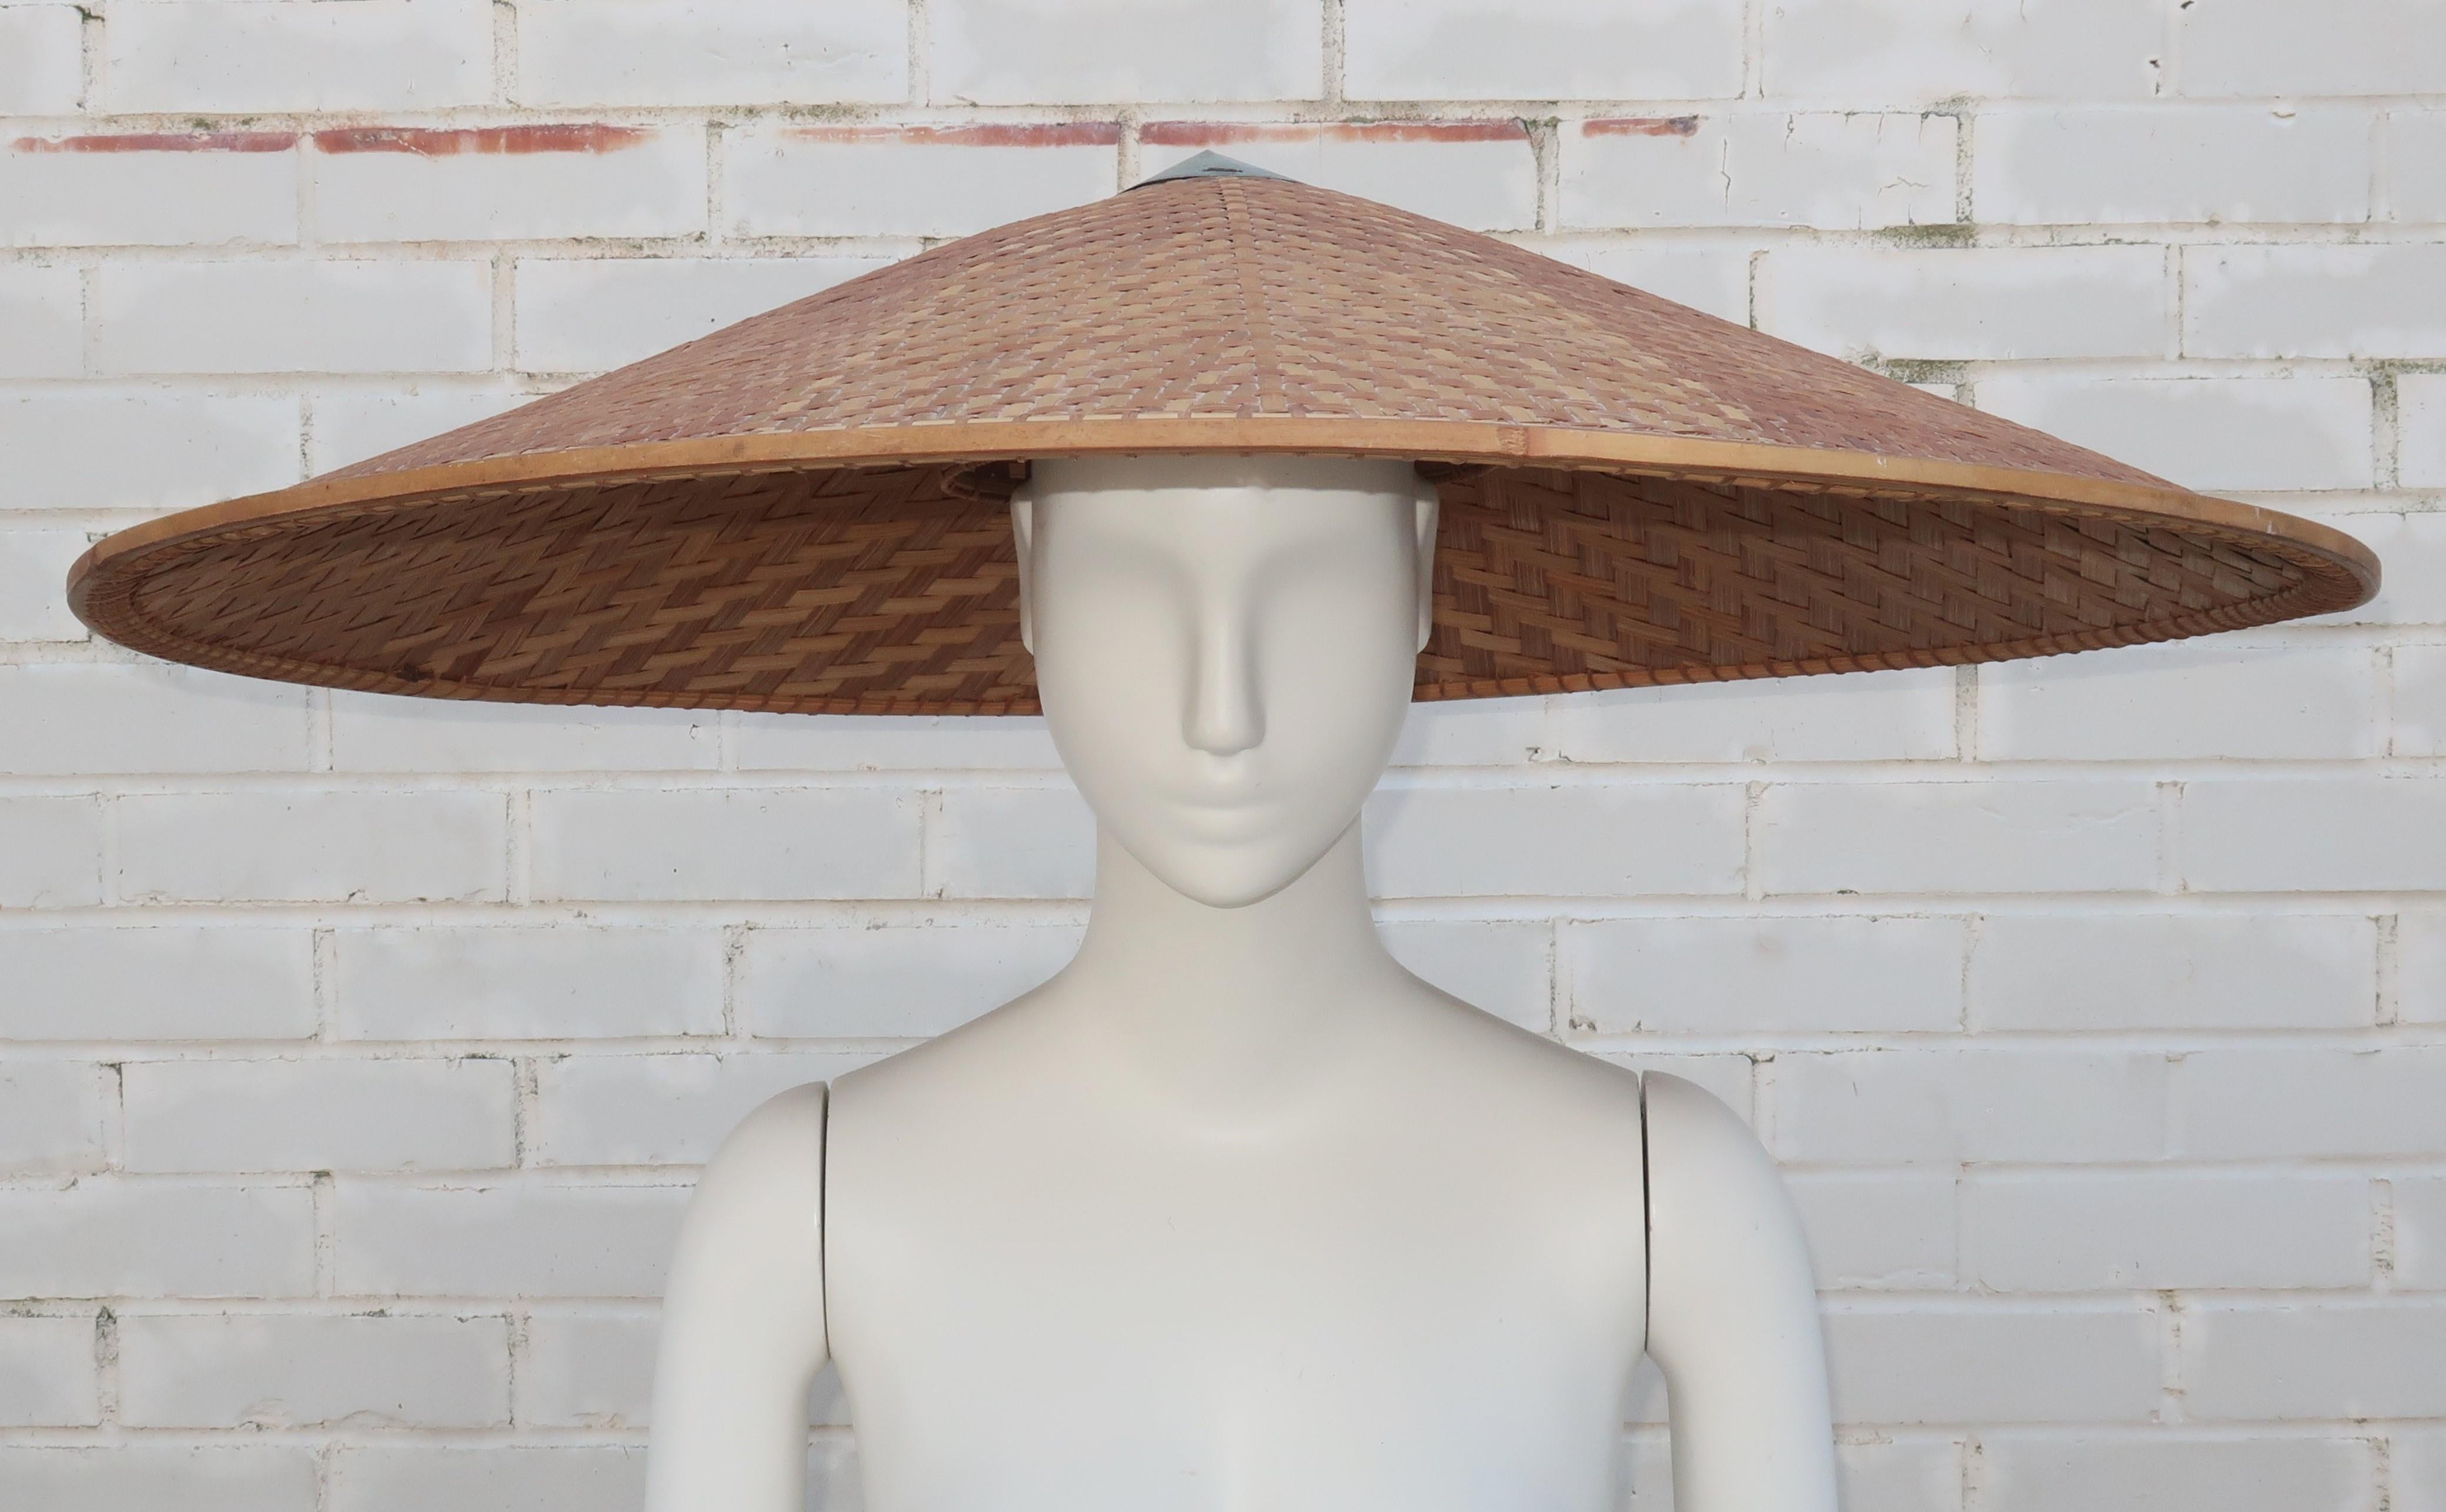 Qui a besoin d'un parapluie quand on a ce fabuleux chapeau ?  Il s'agit d'un très grand chapeau des années 1950 en osier tressé avec un bord en bambou et en paille et une calotte en métal.  L'intérieur est équipé d'une bande en treillis qui